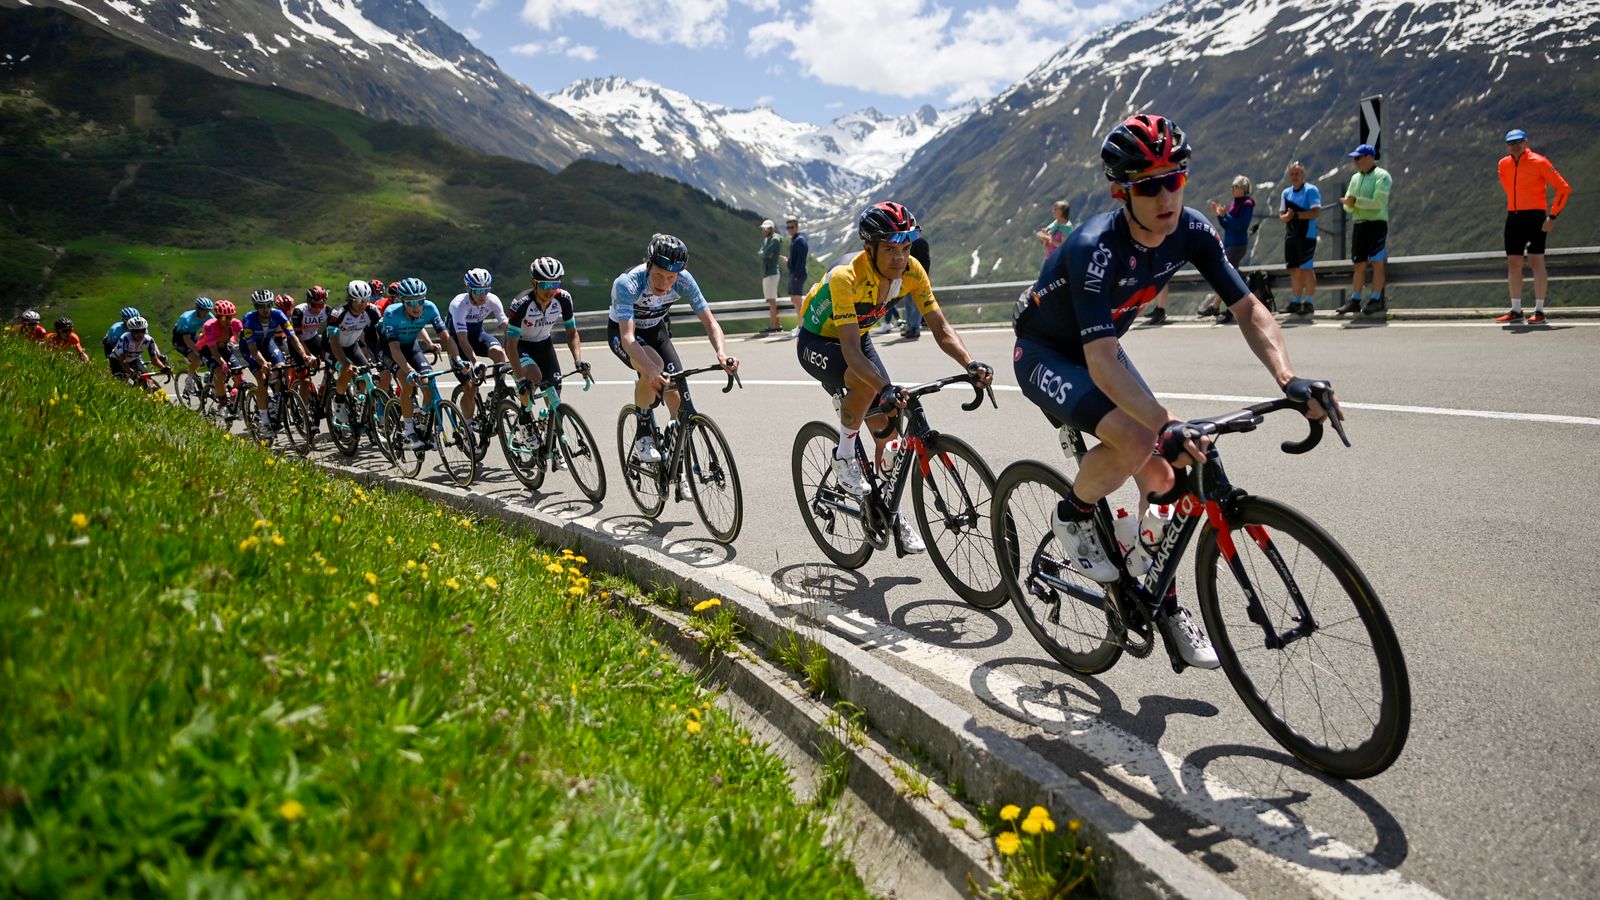 Tour de France: Covid-19 outbreak at Tour de Suisse raises concerns